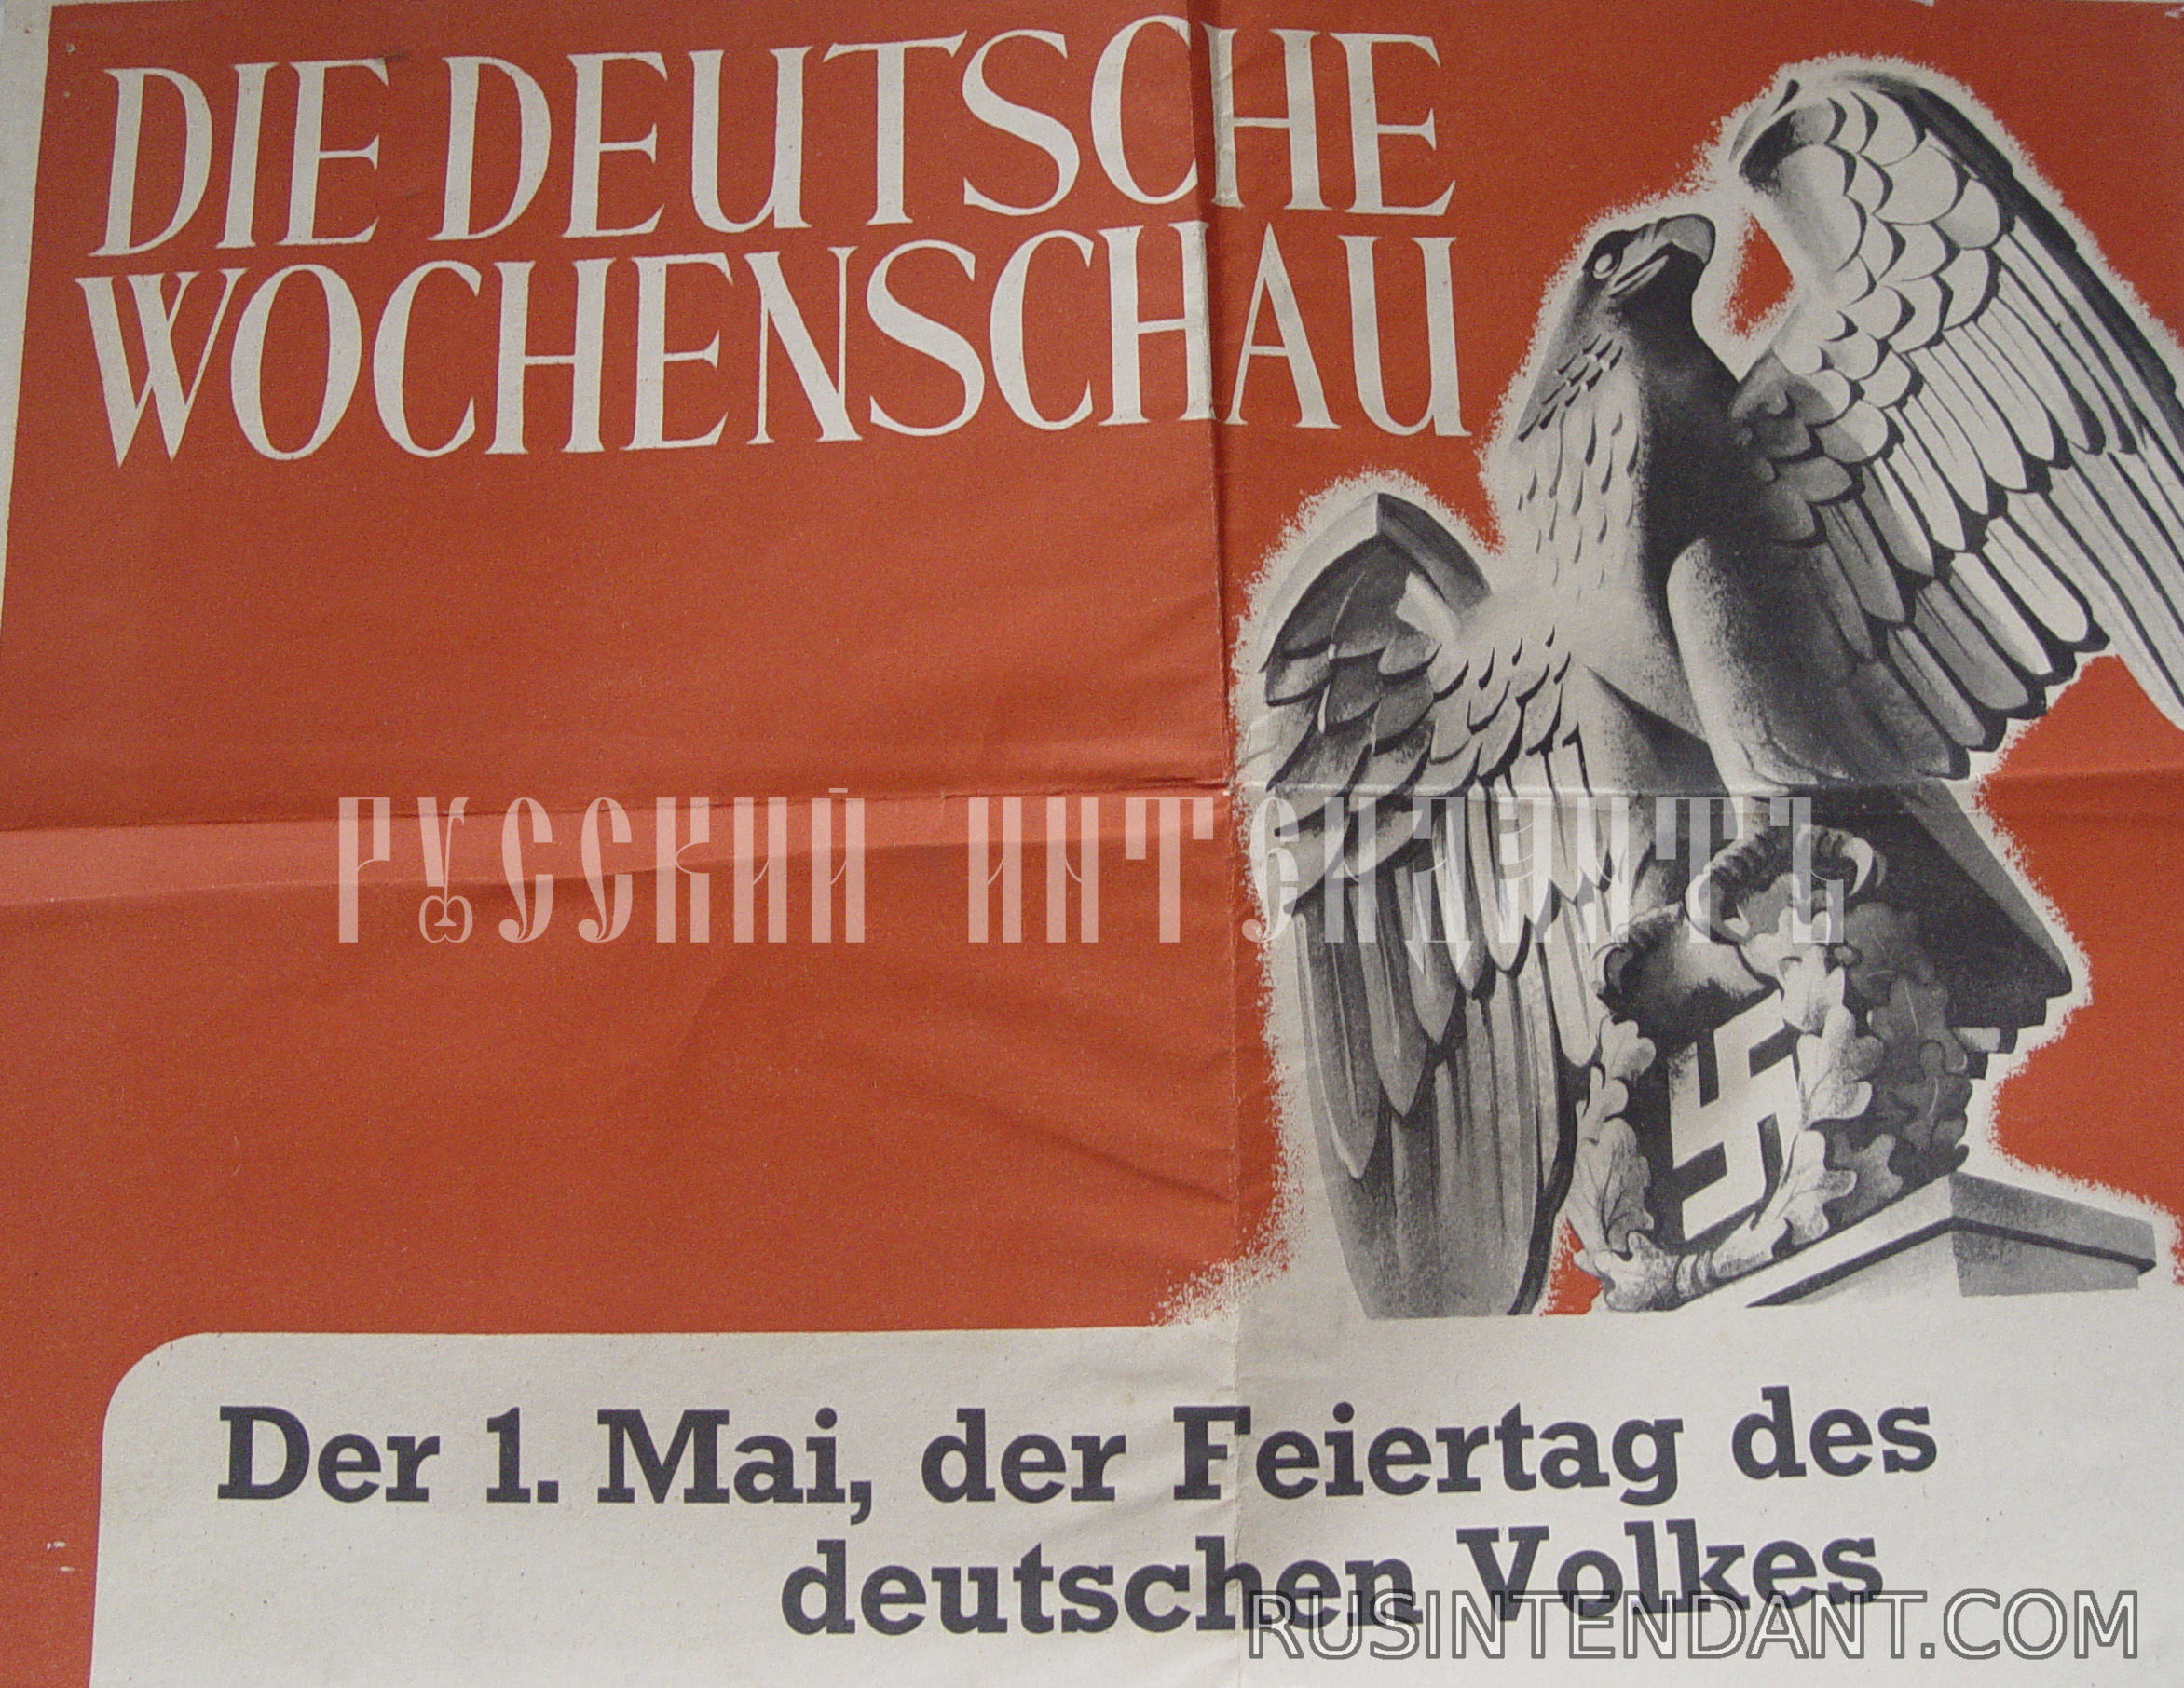 Фото 4: Типографский плакат  киножурнала "Немецкий еженедельник" 